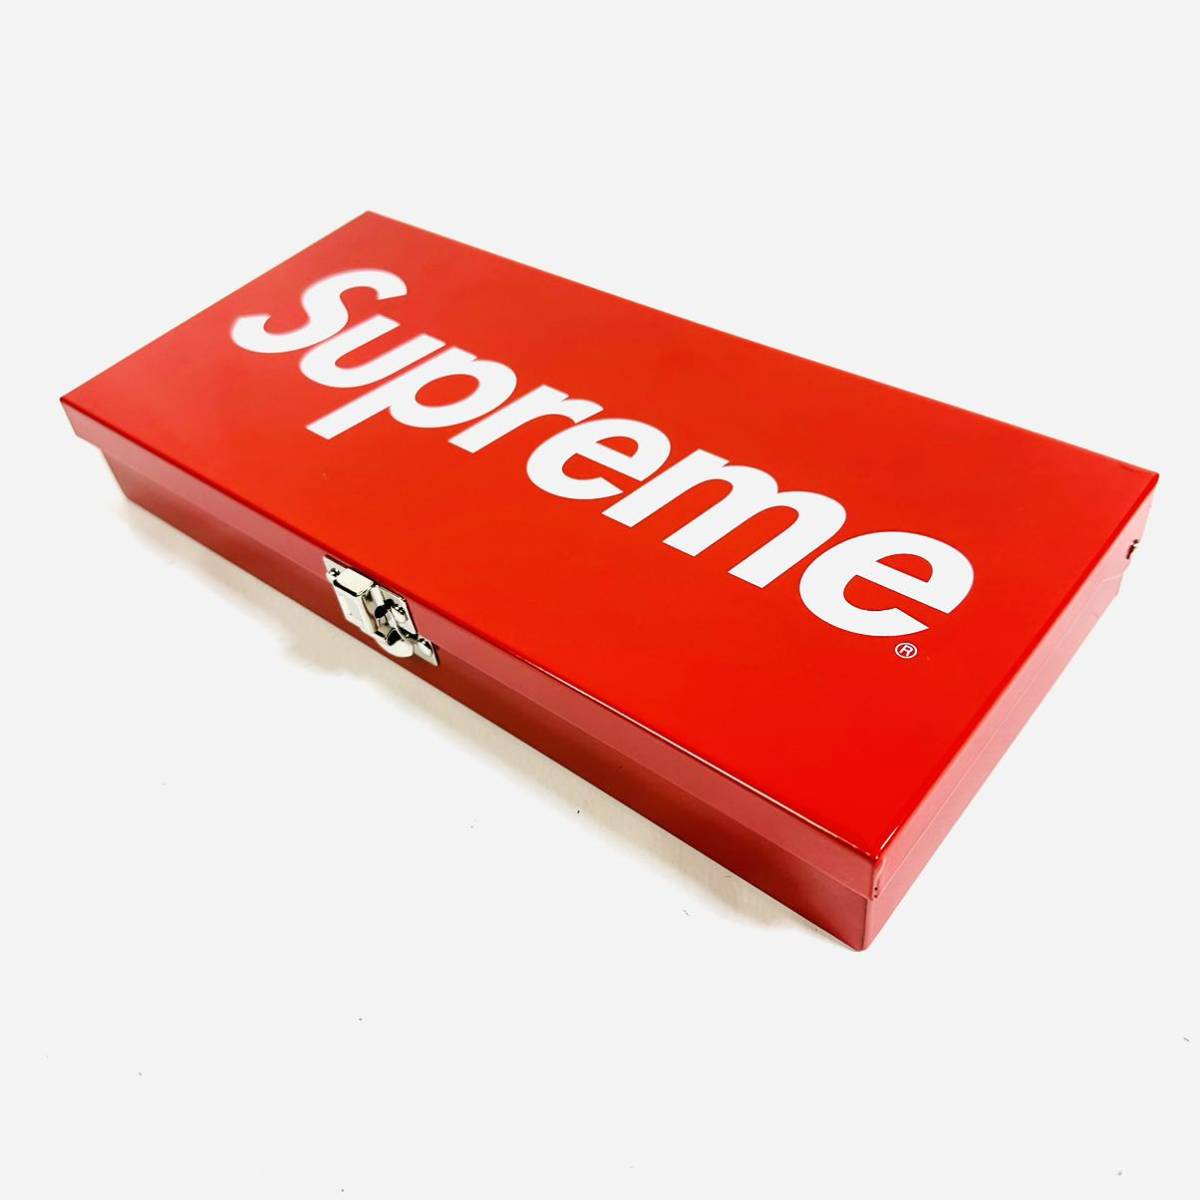 【未使用】Supreme シュプリーム ロックボックス レッド ホワイト ロゴ 金属製 金庫 工具箱 小物入れ 収納ケース ツールボックス